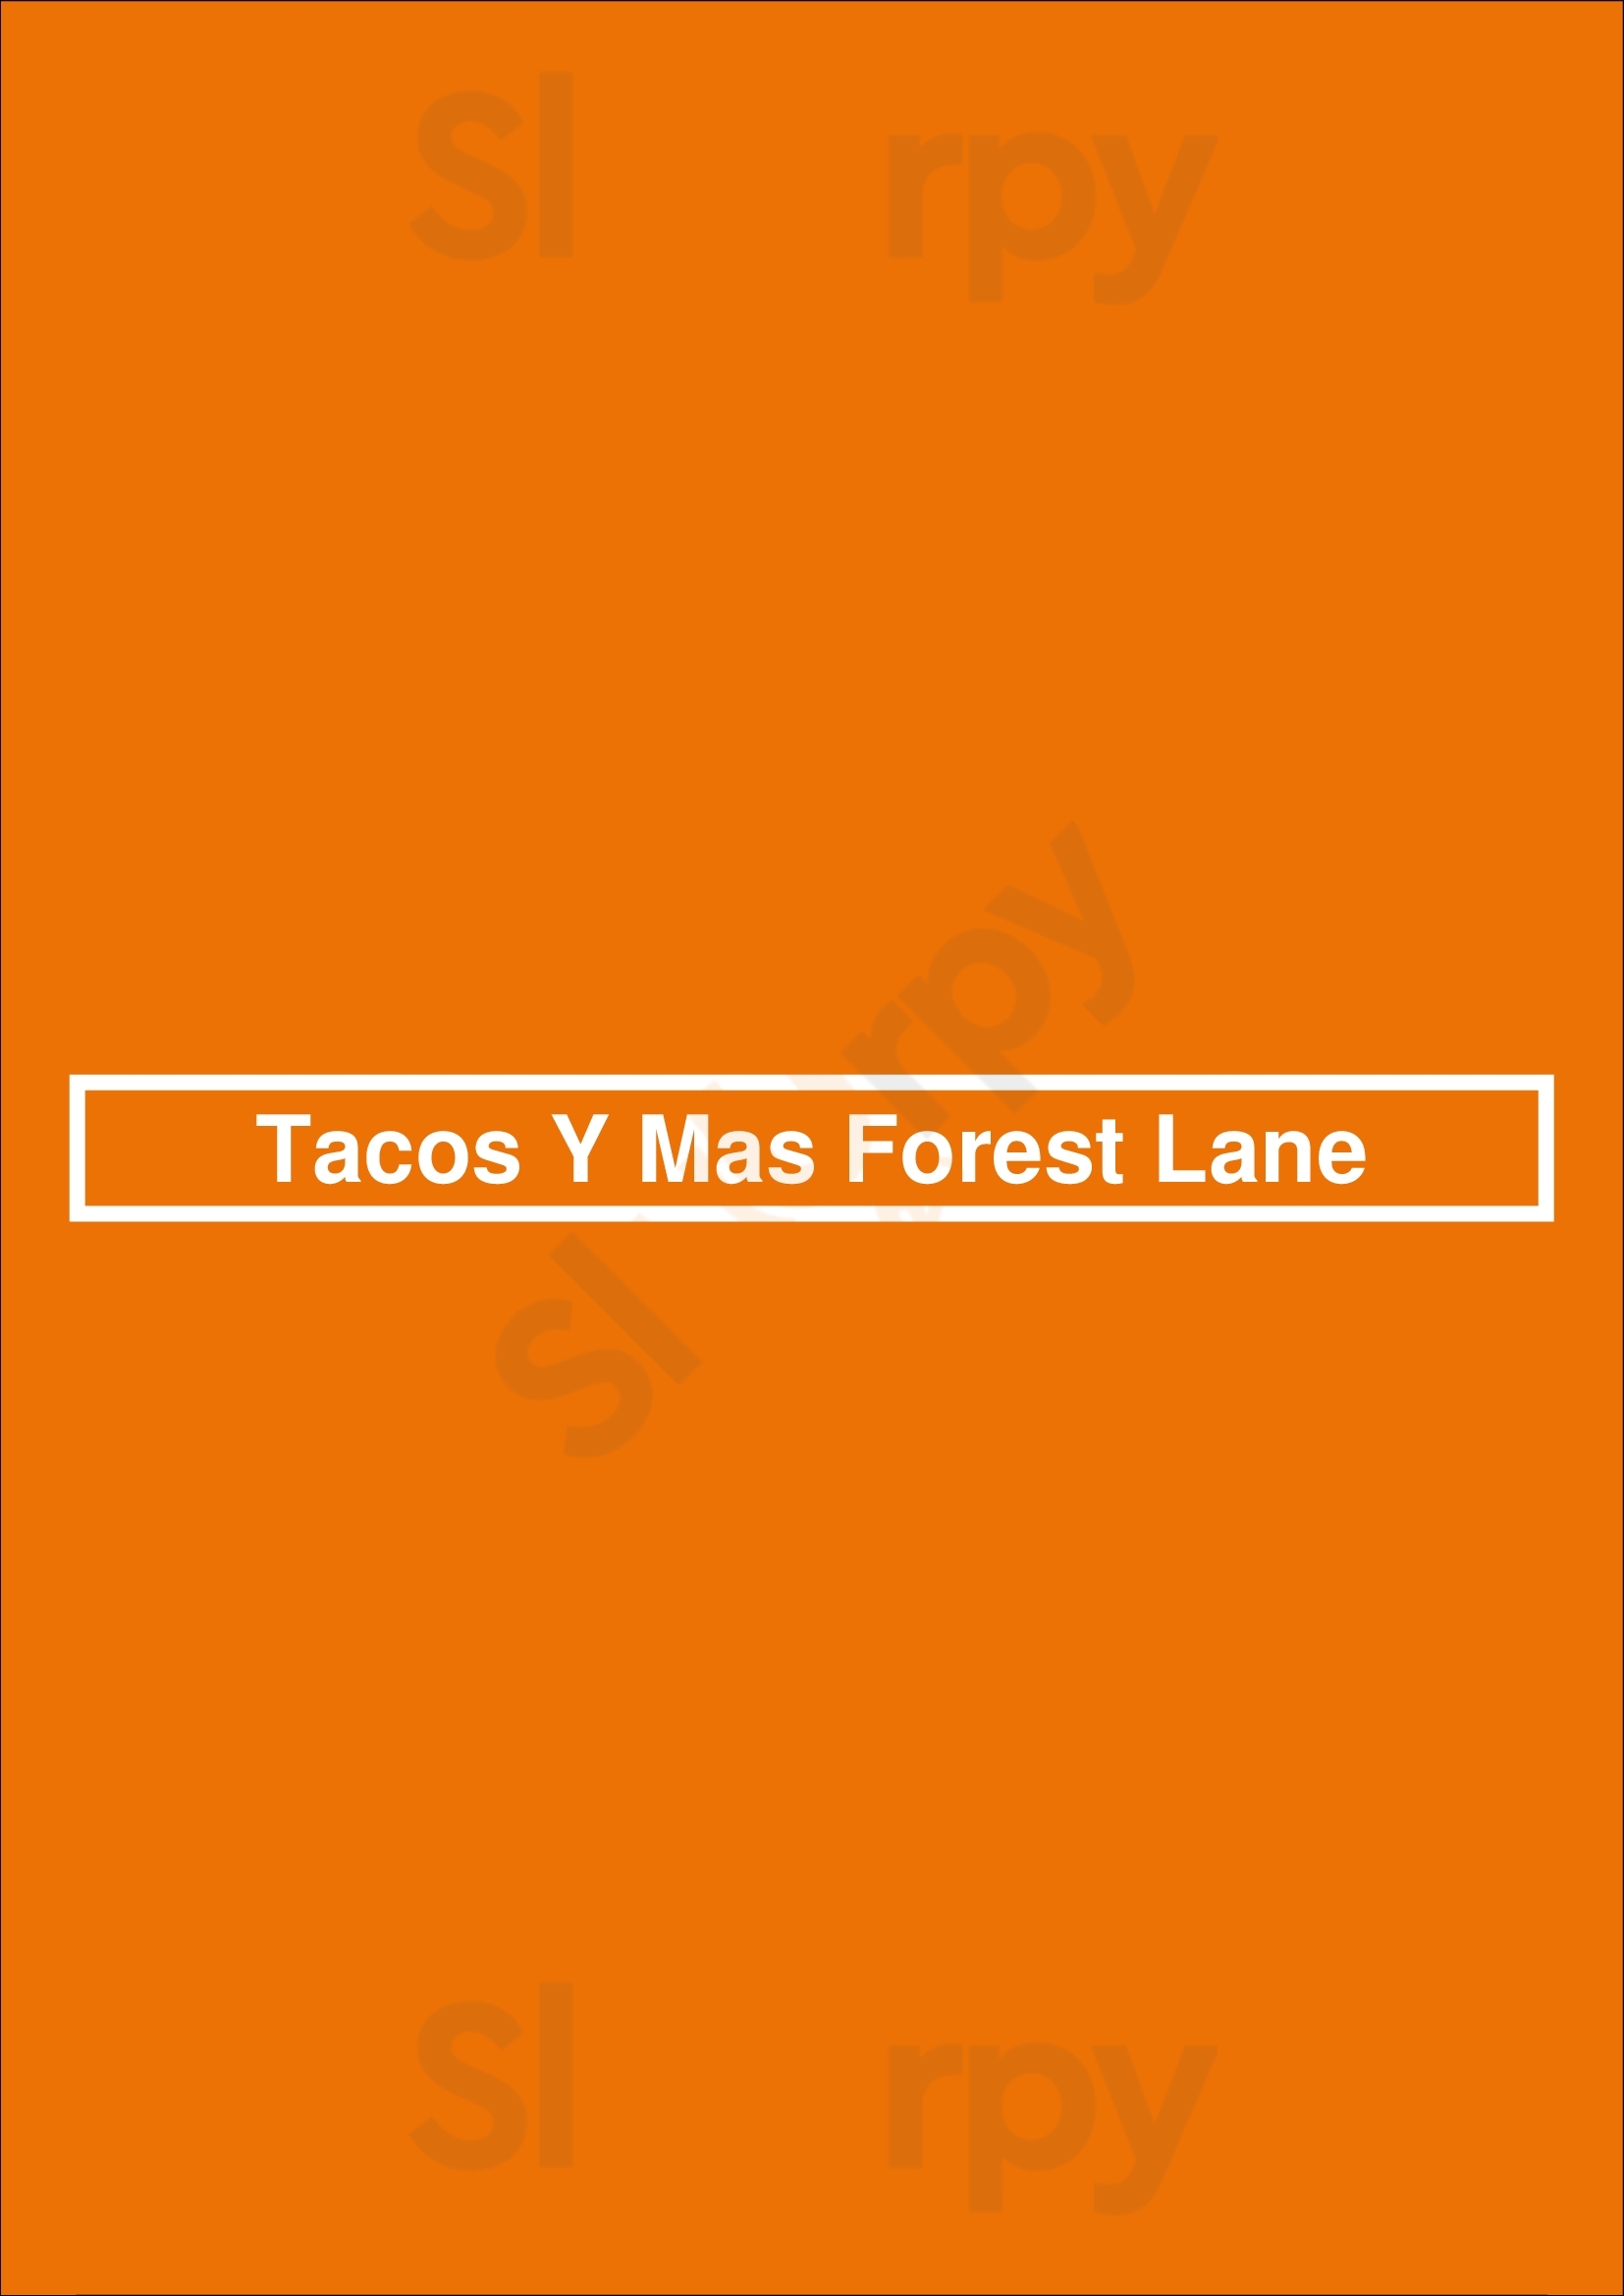 Tacos Y Mas Forest Lane Dallas Menu - 1